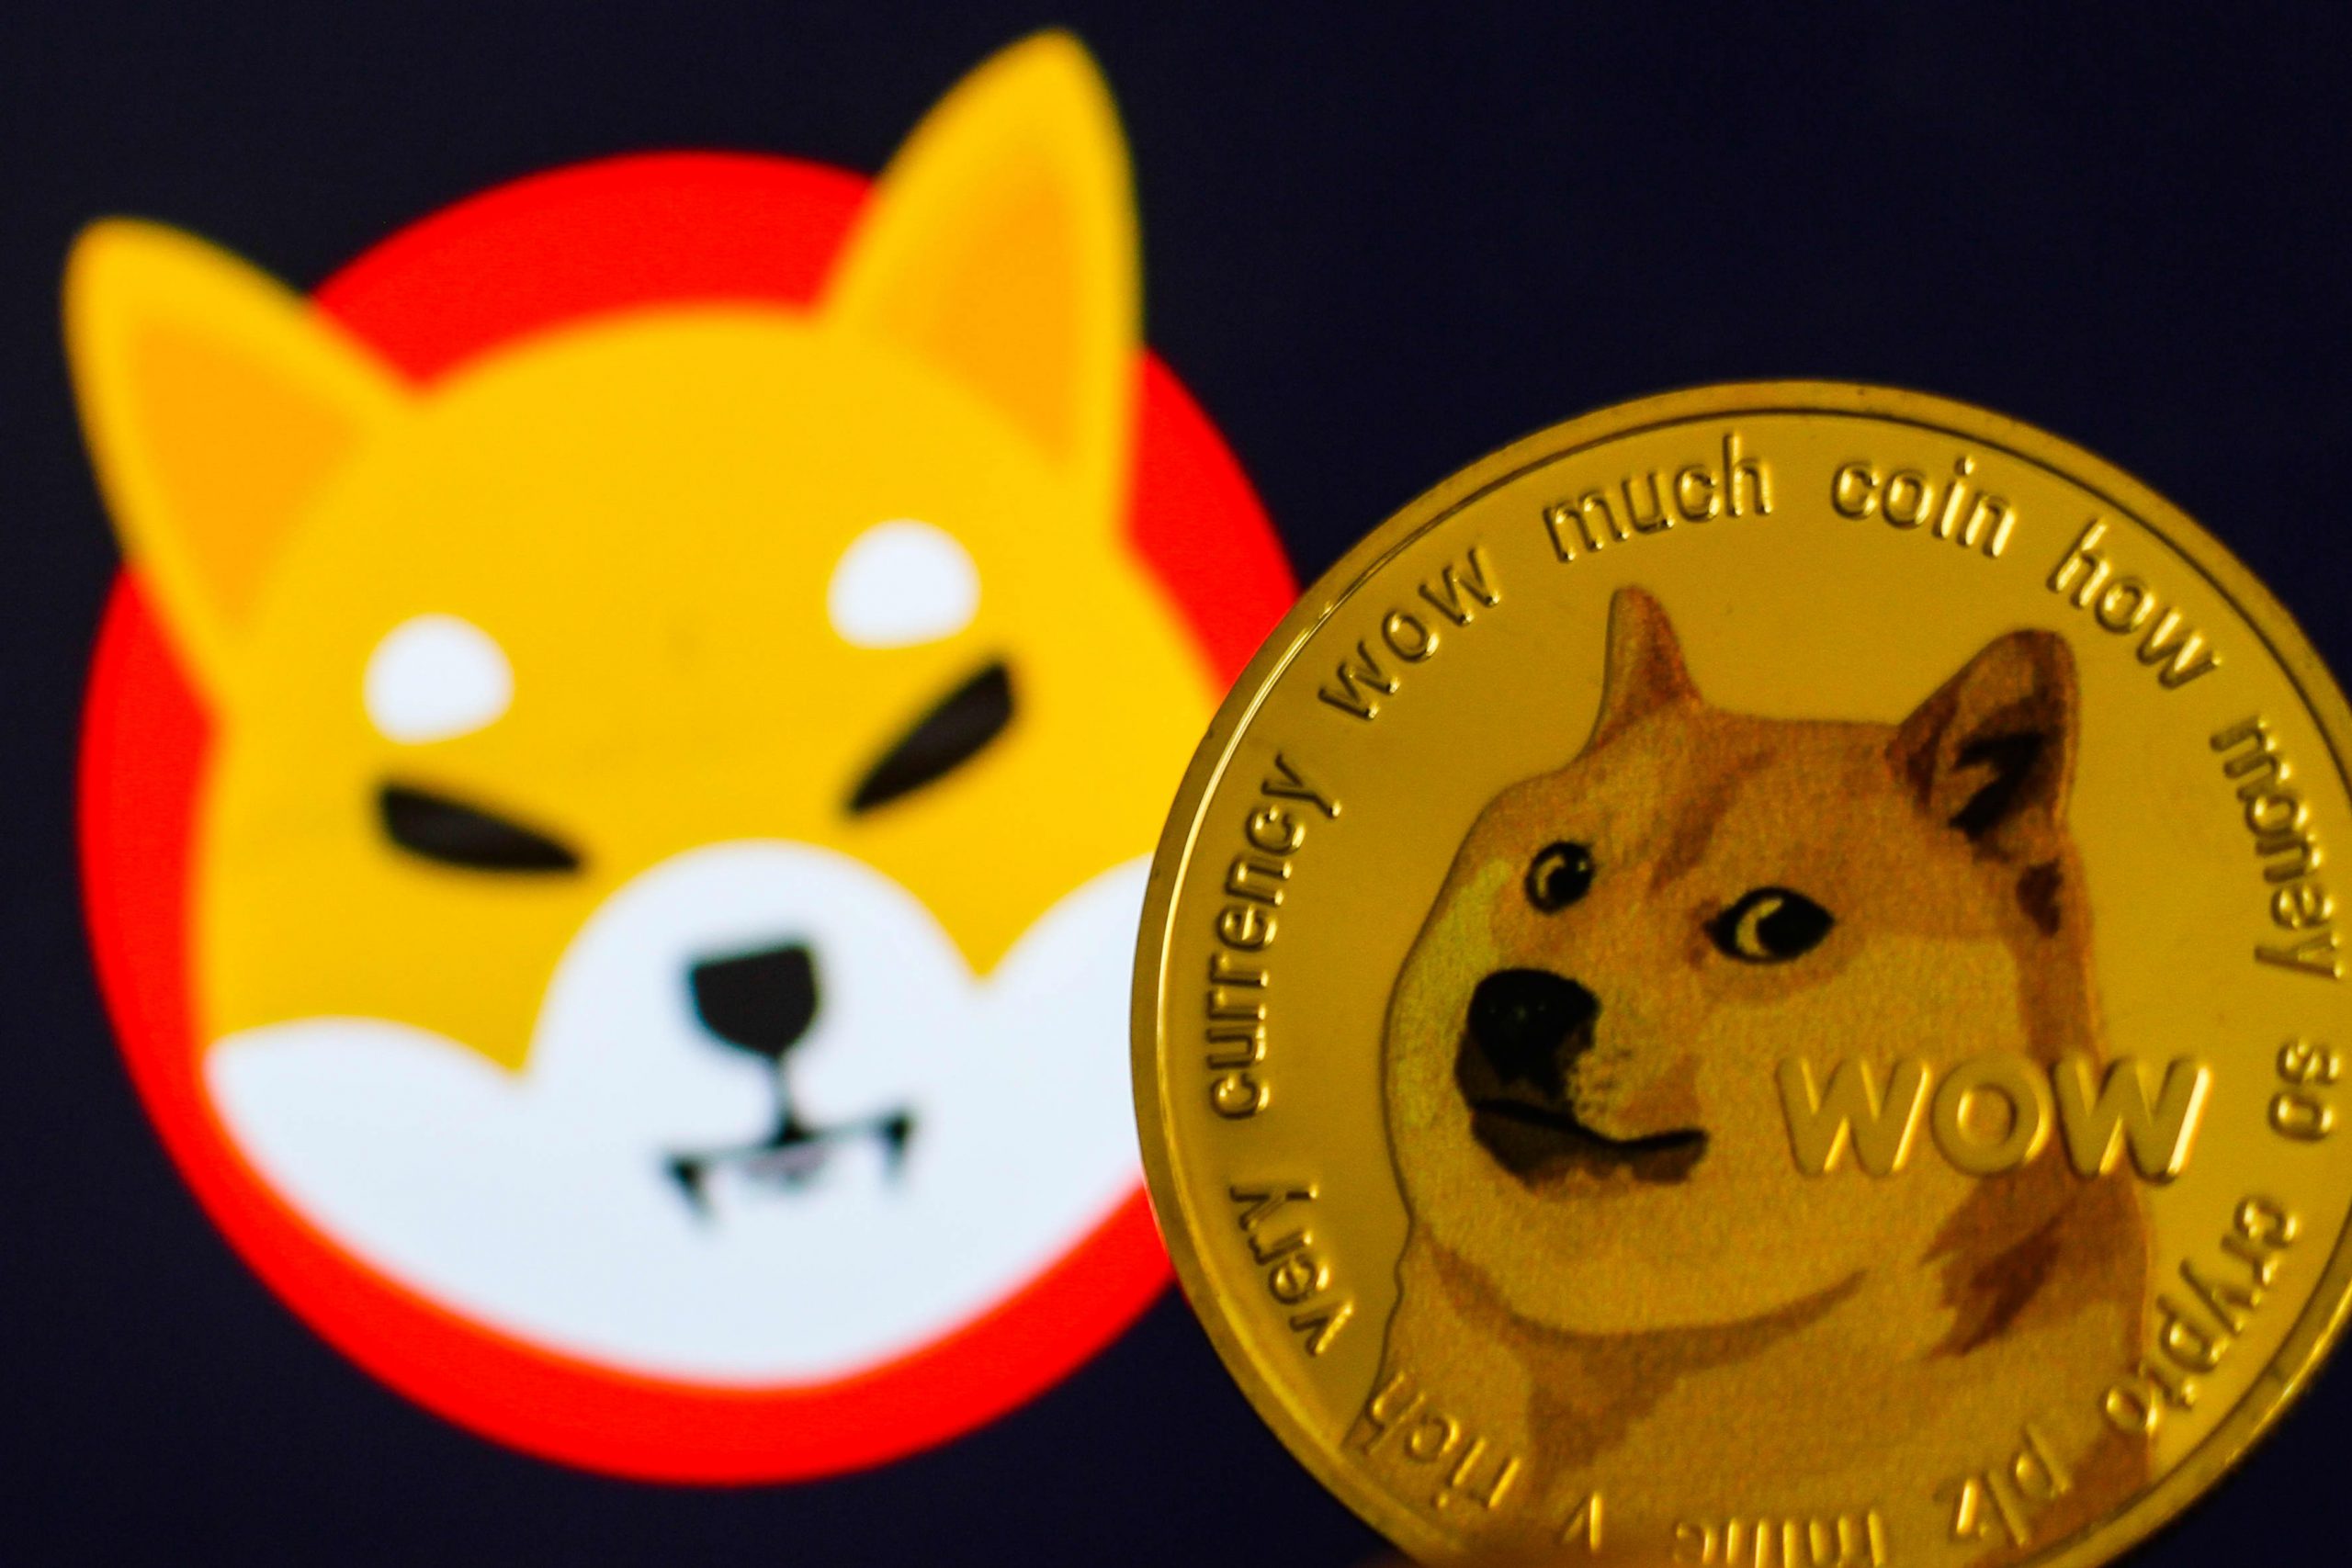 Dogecoin và Shiba Inu đều là những biểu tượng nổi tiếng trong cộng đồng tiền mã hóa, với sự liên kết và ảnh hưởng đến nhau. Hãy xem các hình ảnh liên quan để thêm hiểu về điều này.